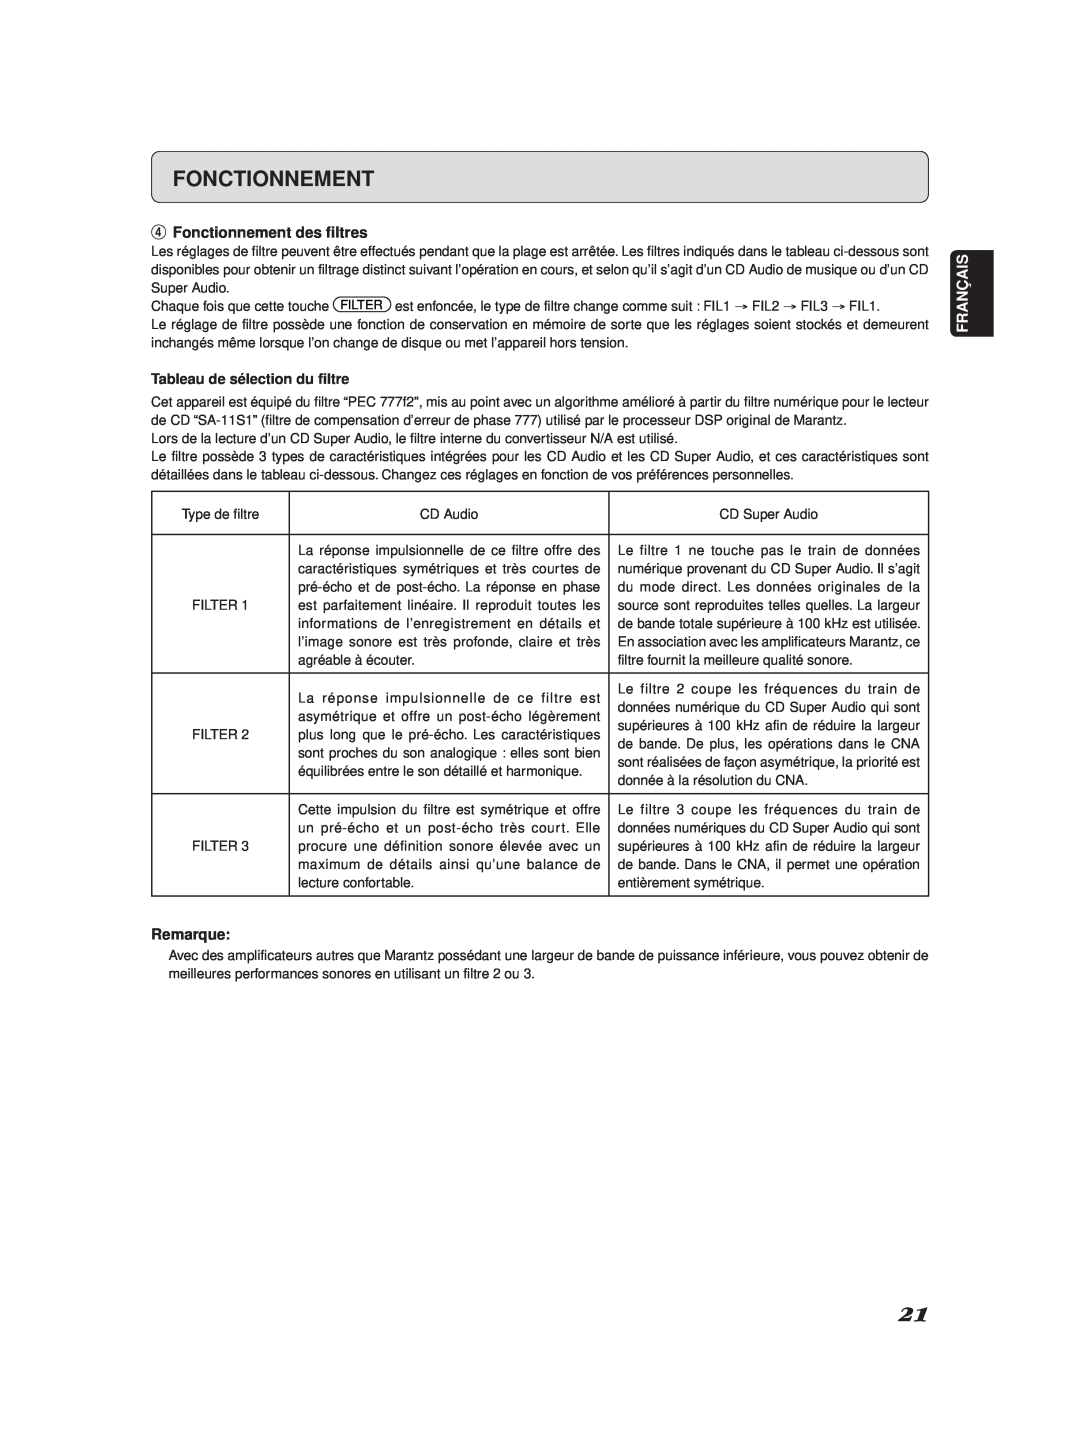 Marantz SA-11S2 manual rFonctionnement des filtres, Tableau de sélection du ﬁltre, Remarque, Français 